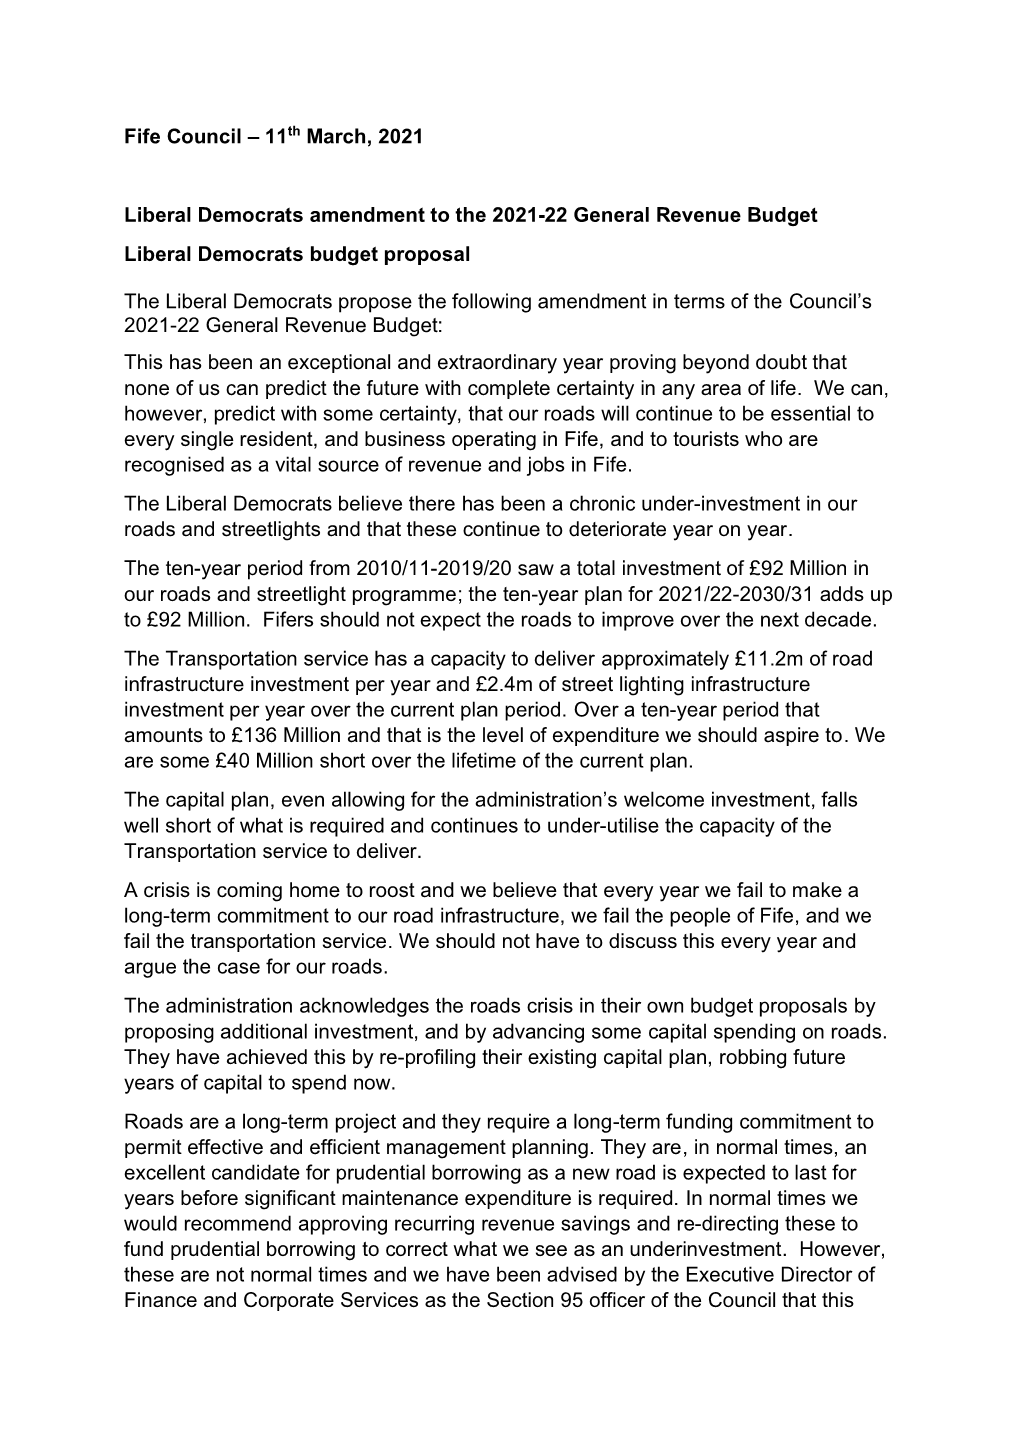 Liberal Democrats Budget Amendment 2021-22